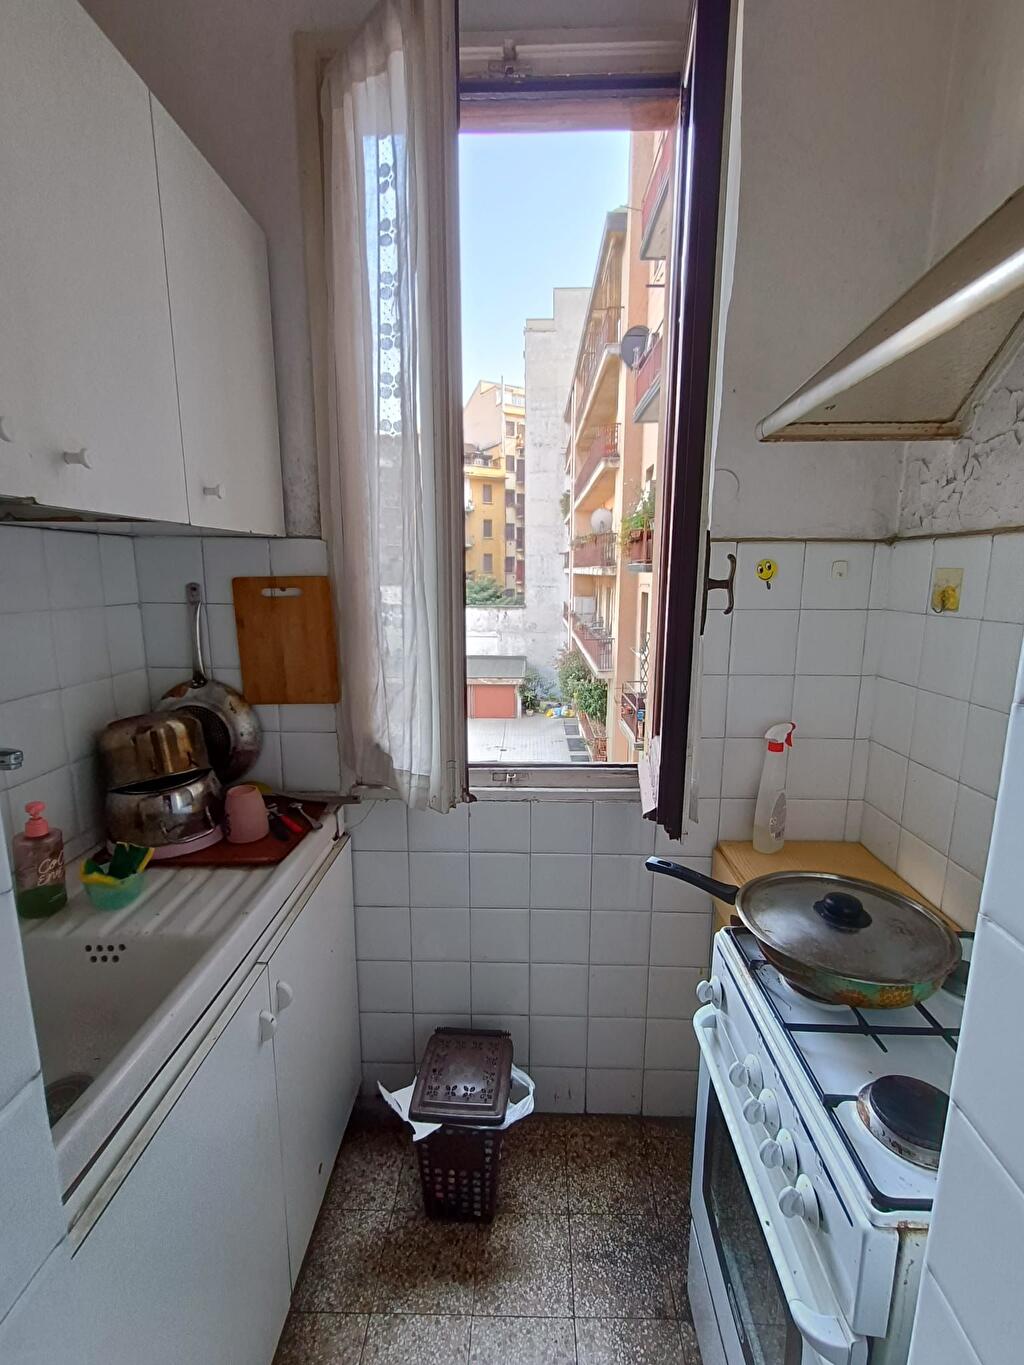 Immagine 1 di Camera condivisa in affitto  a Milano